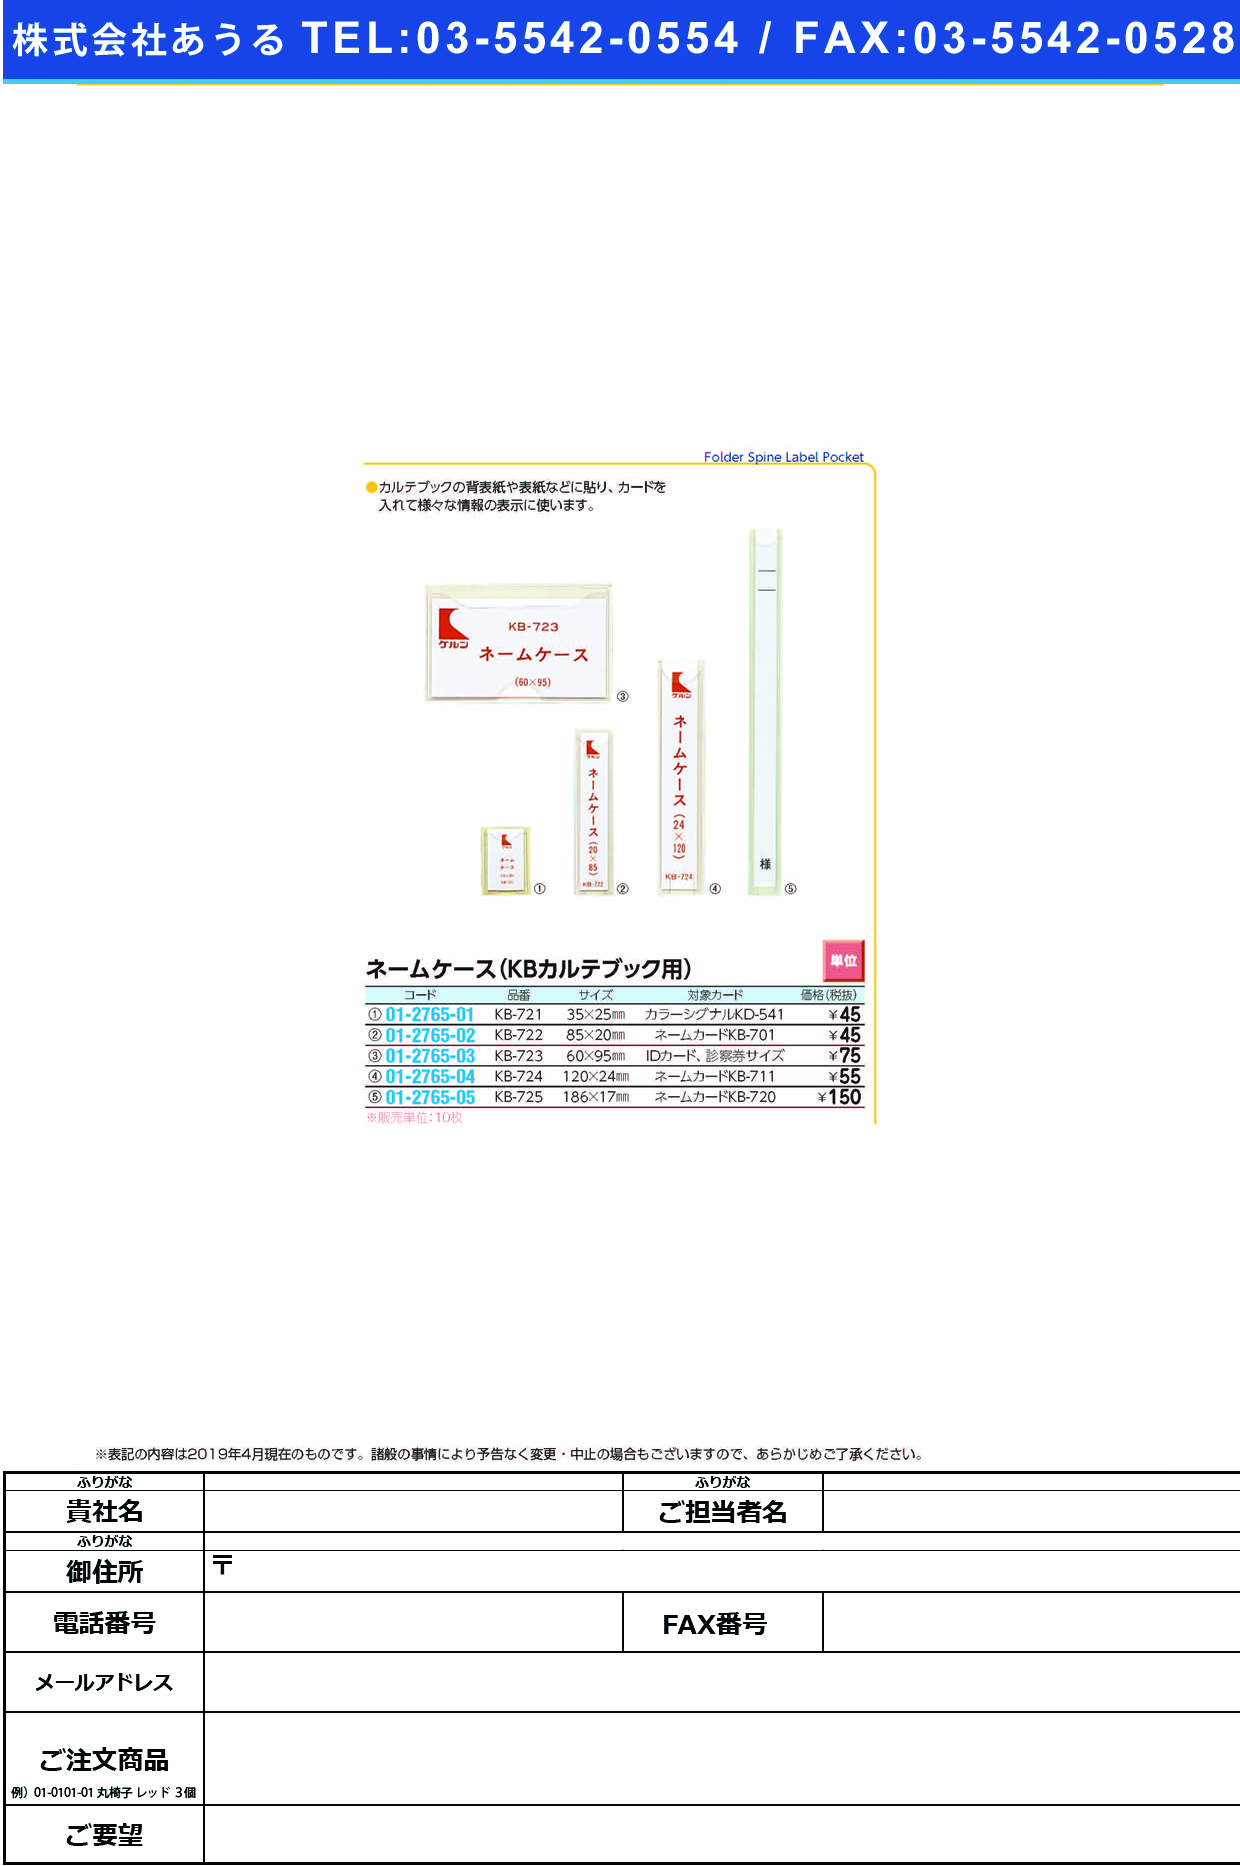 (01-2765-04)ネームケース（ＫＢカルテブック用） KB-724 ﾈｰﾑｹｰｽ(ケルン)【10枚単位】【2019年カタログ商品】